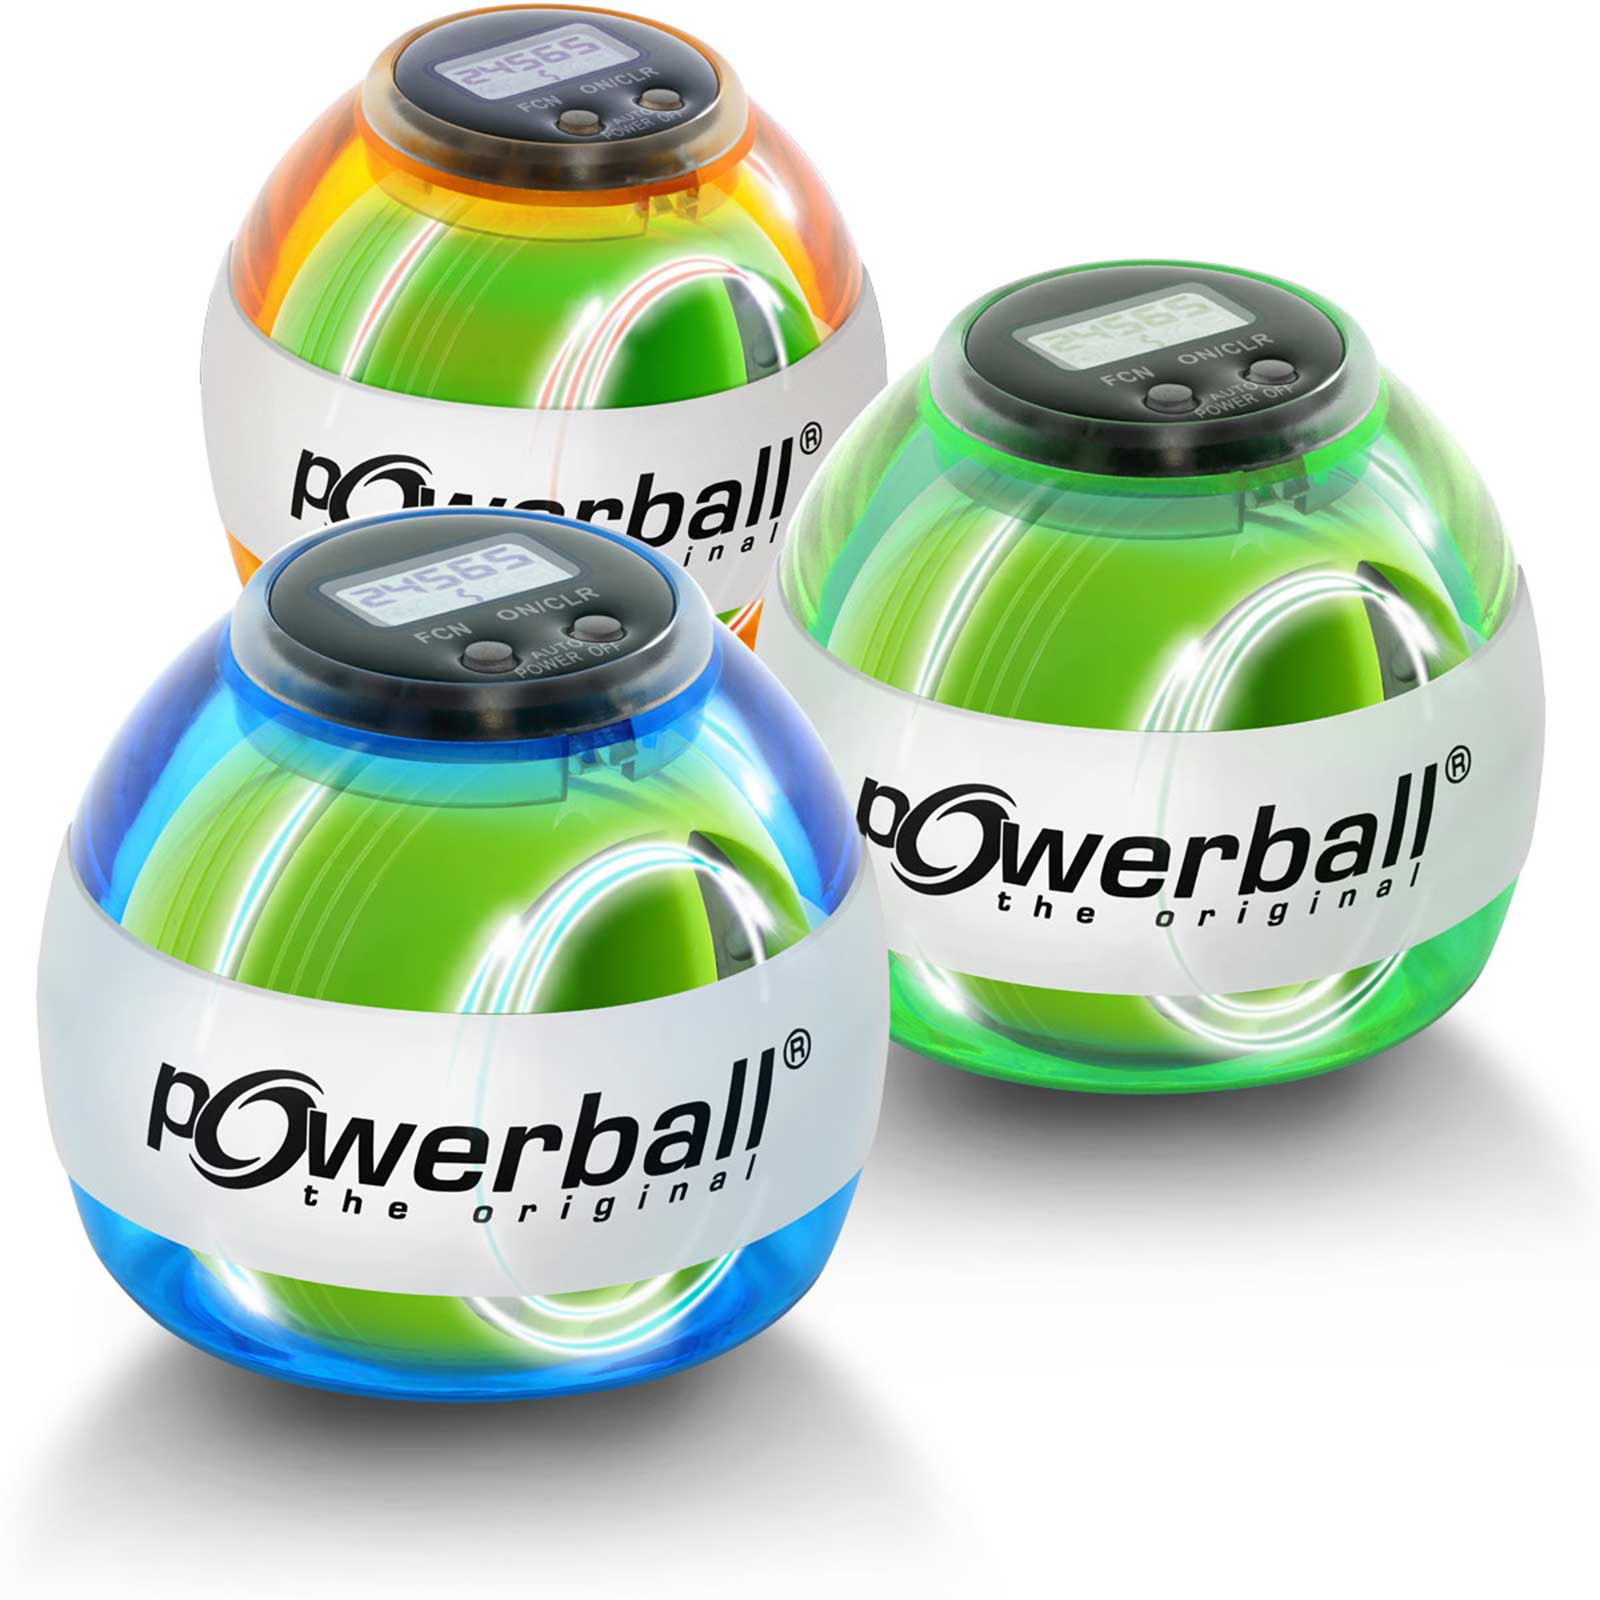 Kernpower Powerball Max mit Lichteffekt